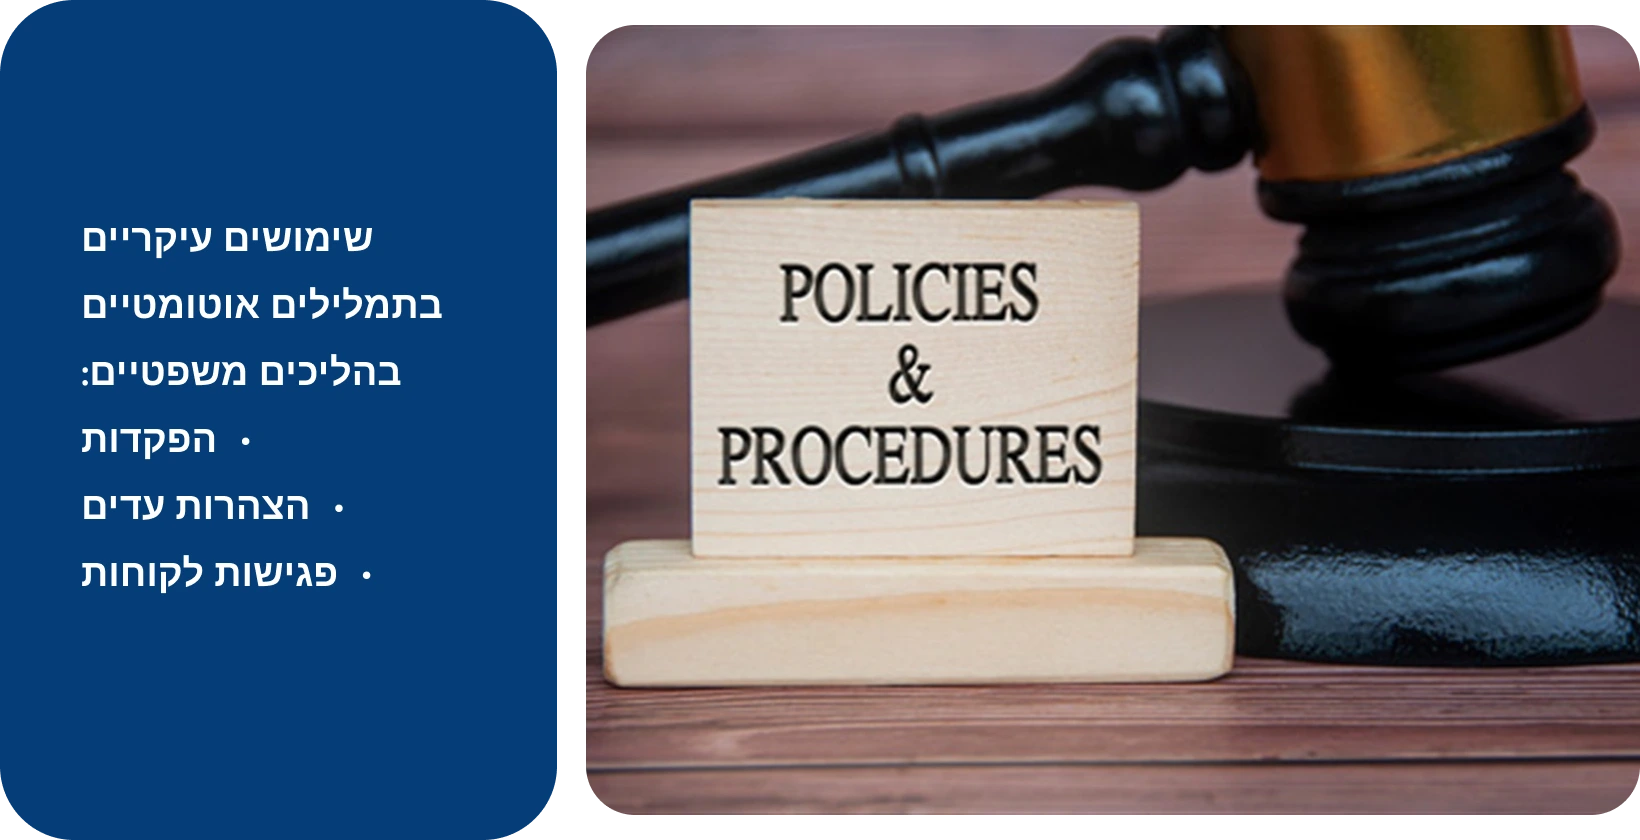 לצד השלט 'מדיניות ונהלים', המייצג סטנדרטים משפטיים העומדים בכלי תמלול אוטומטיים.